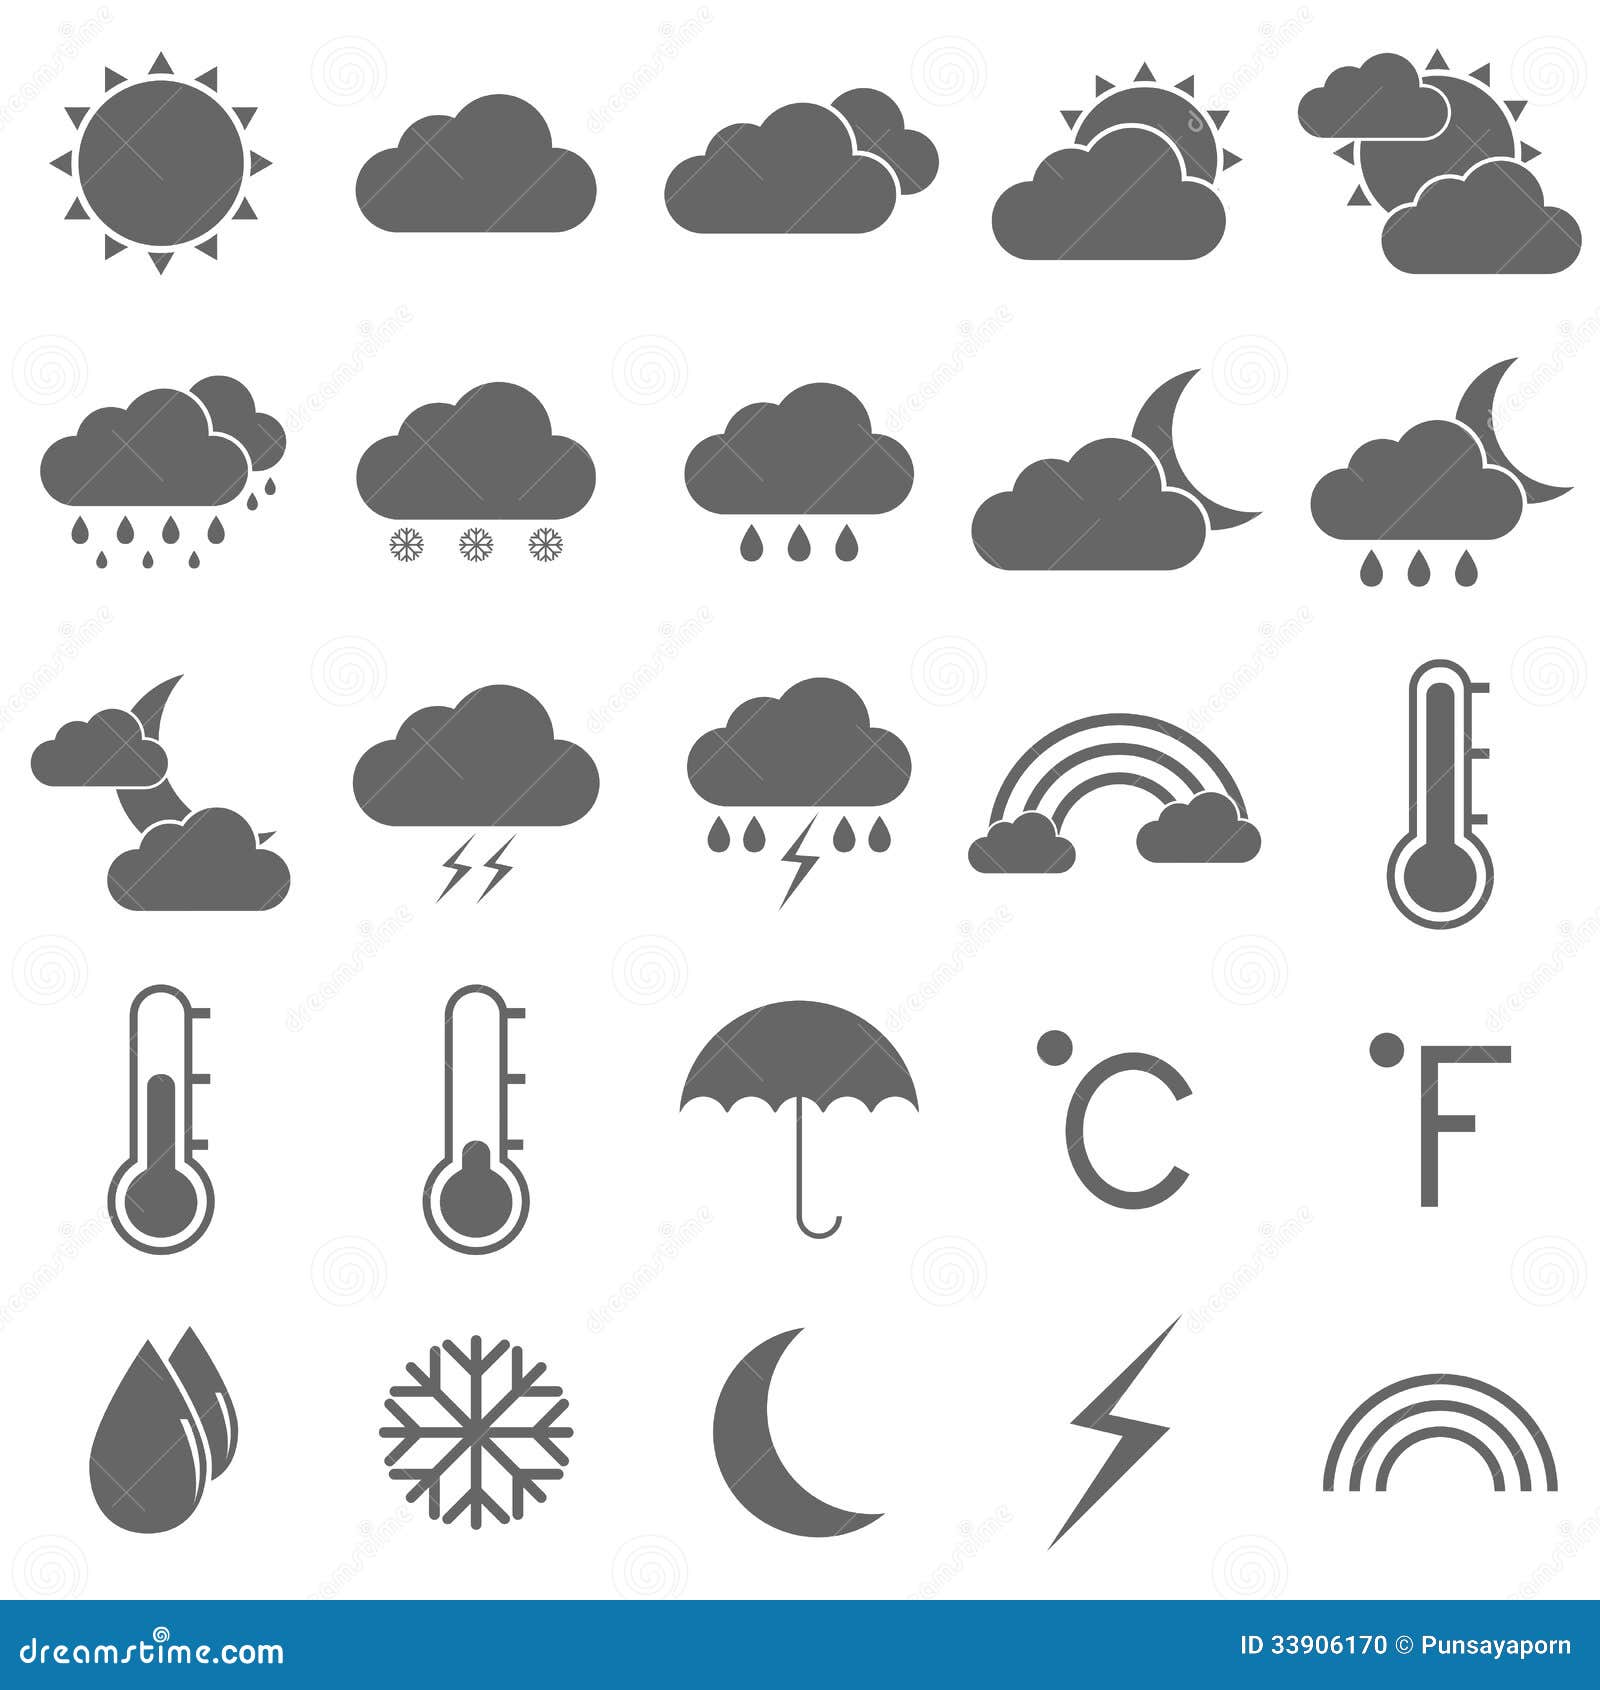 Weather Icons On White Background Stock Photo - Image ...